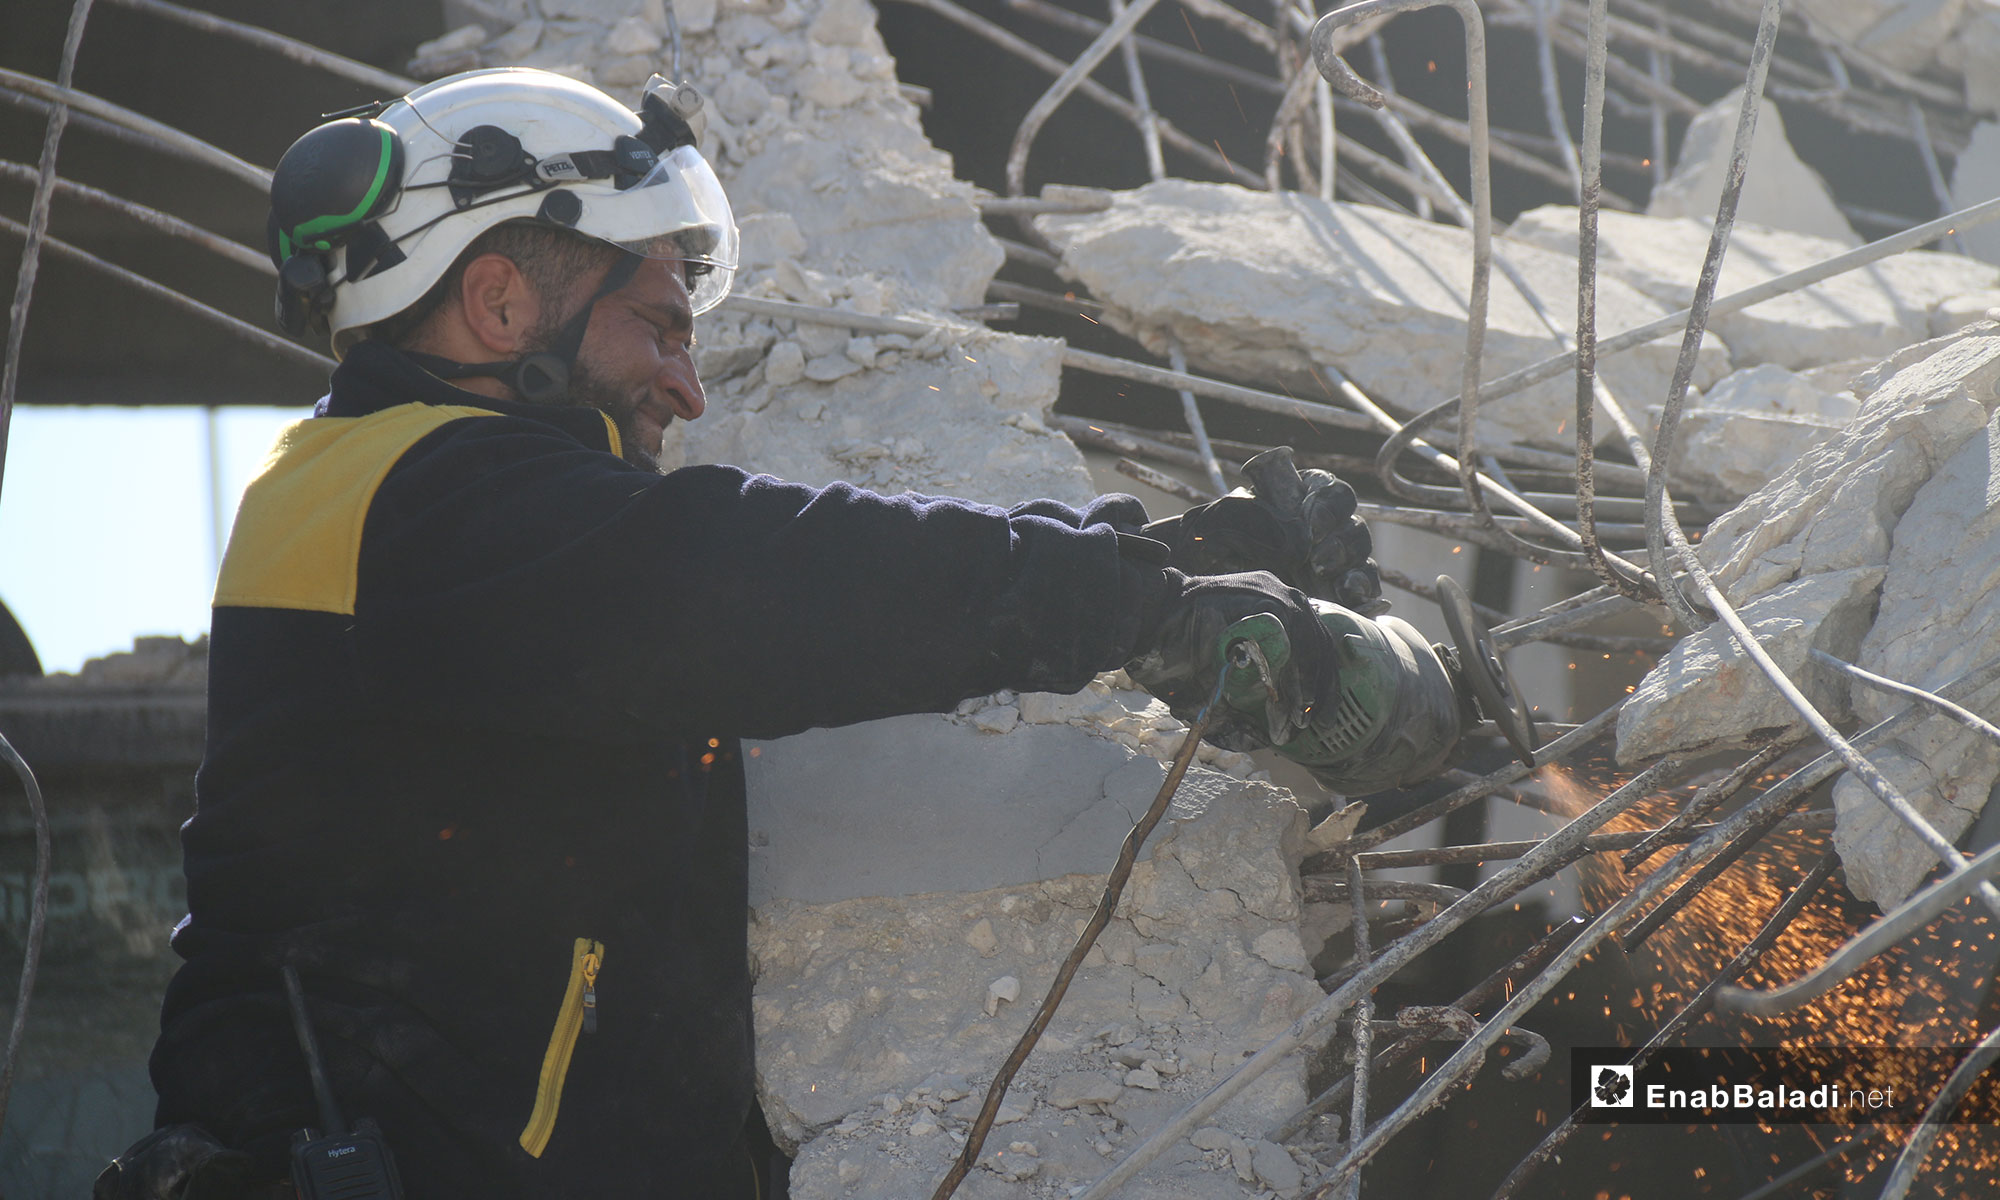 آثار الدمار في مركز الدفاع المدني بمدينة كفرنبل - 13 من أيار 2019 (عنب بلدي)